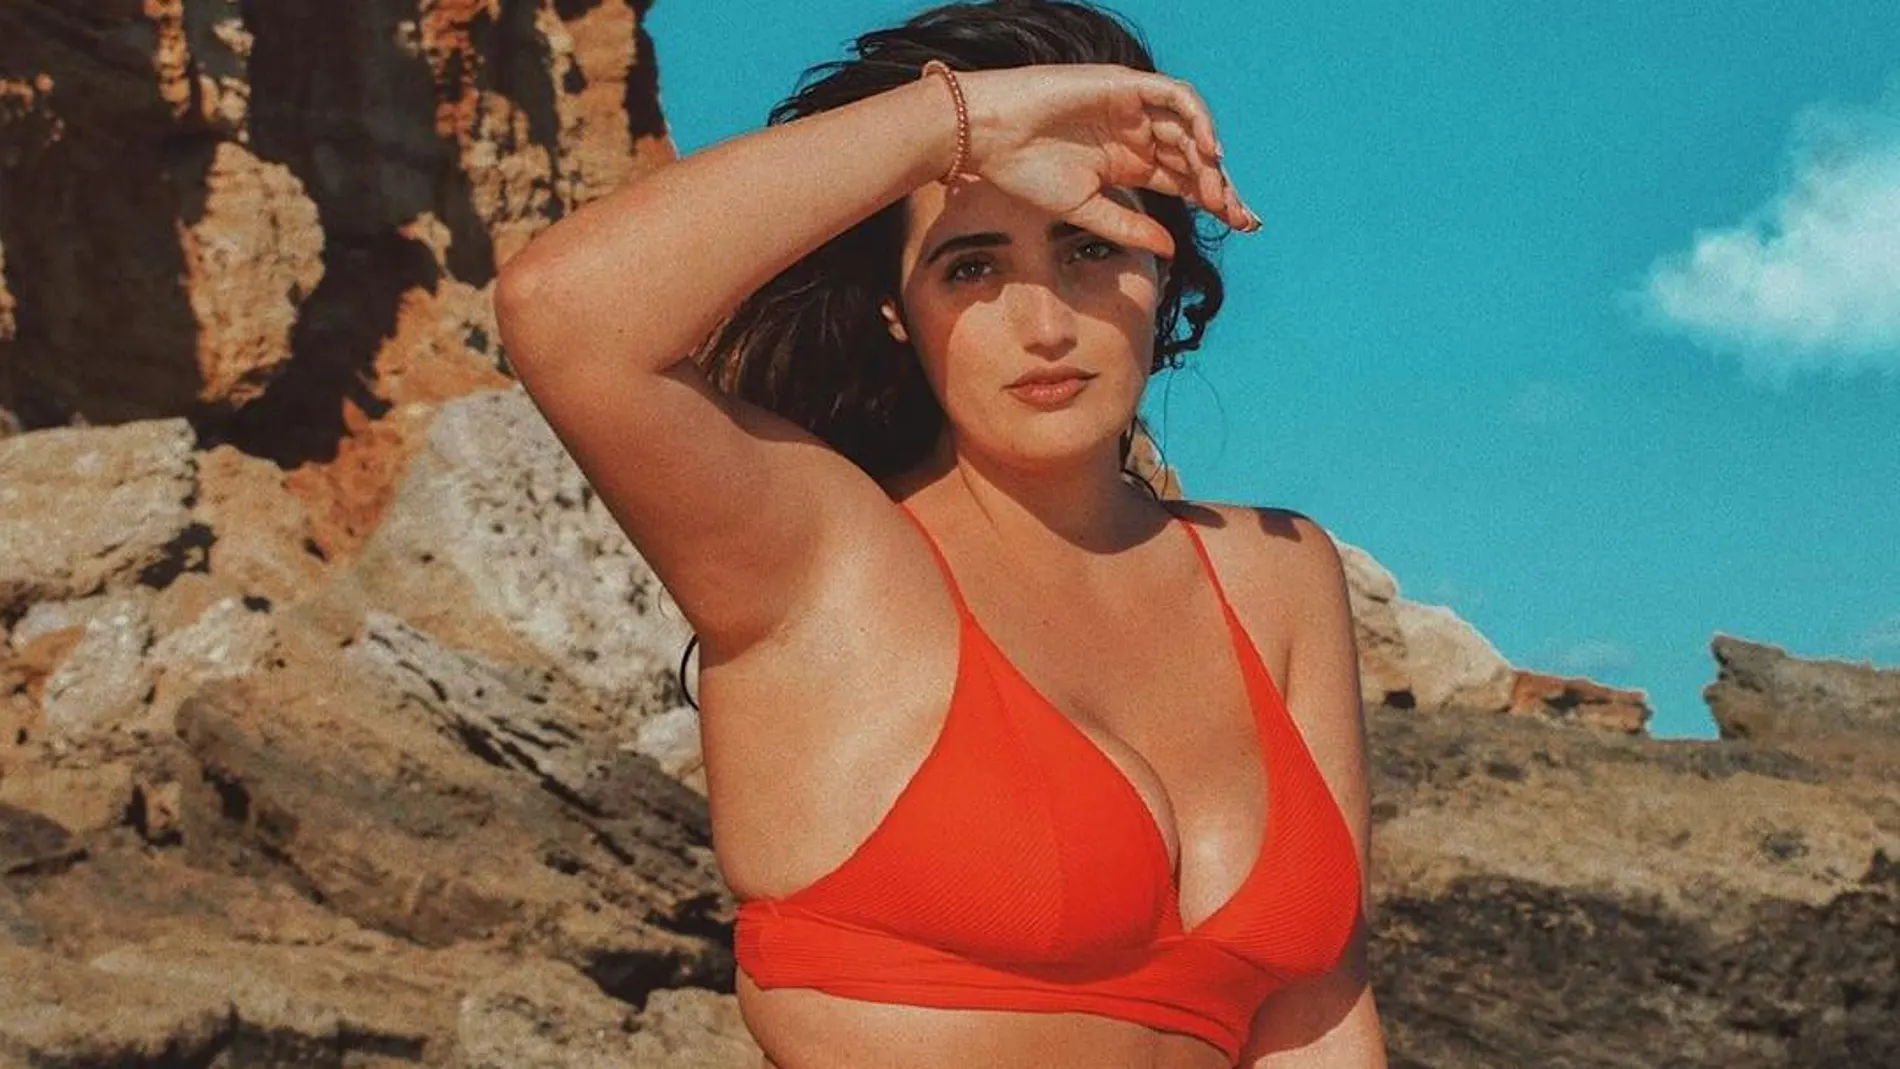 Marina Llorca, así es la joven 'curvy' que arrasa en Instagram